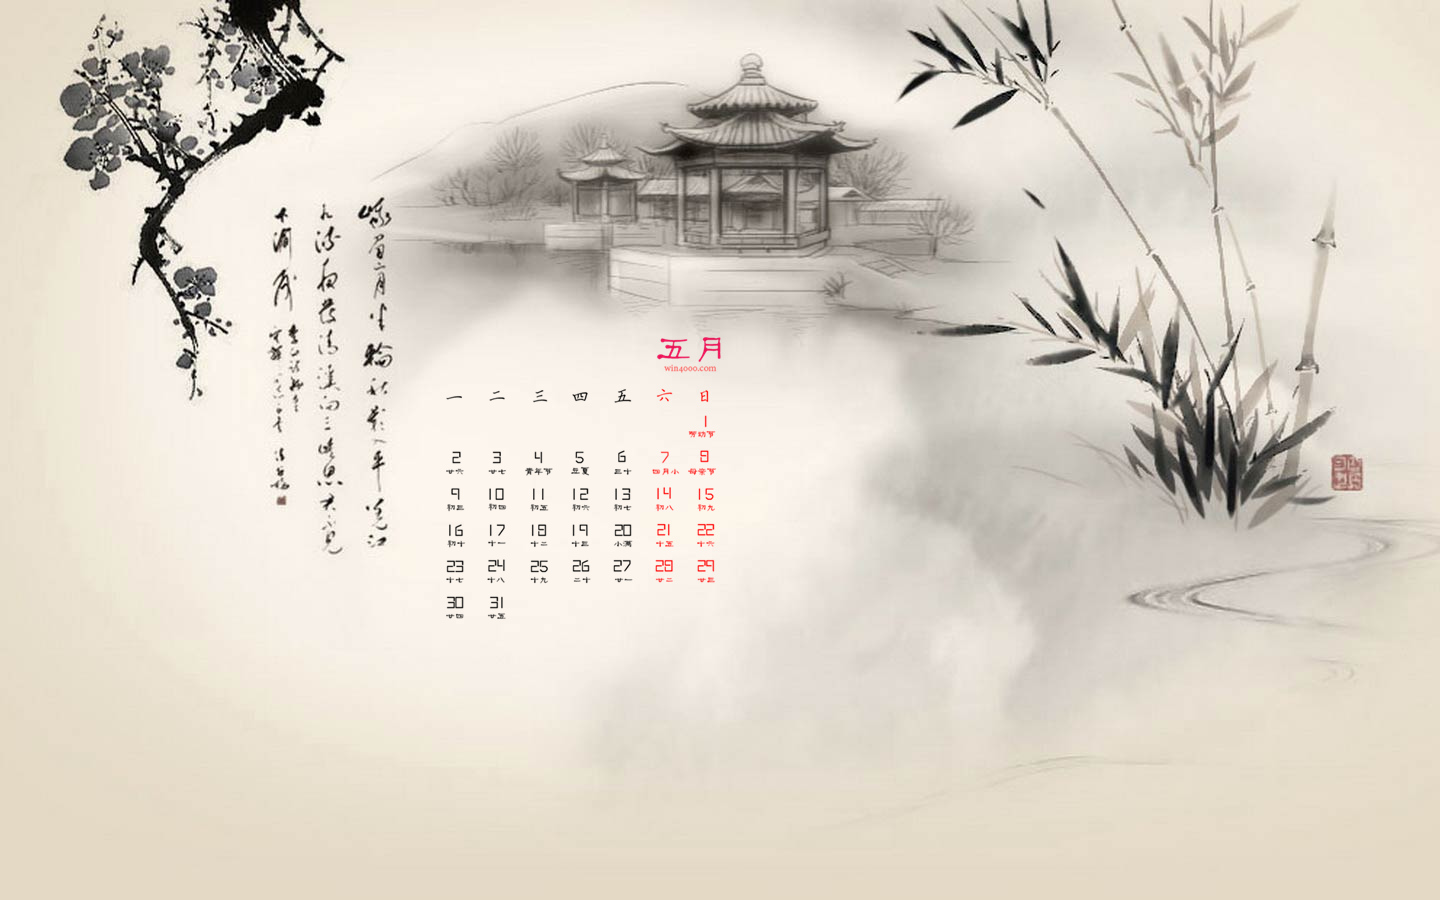 2016年5月日历唯美淡雅中国风壁纸桌面图片